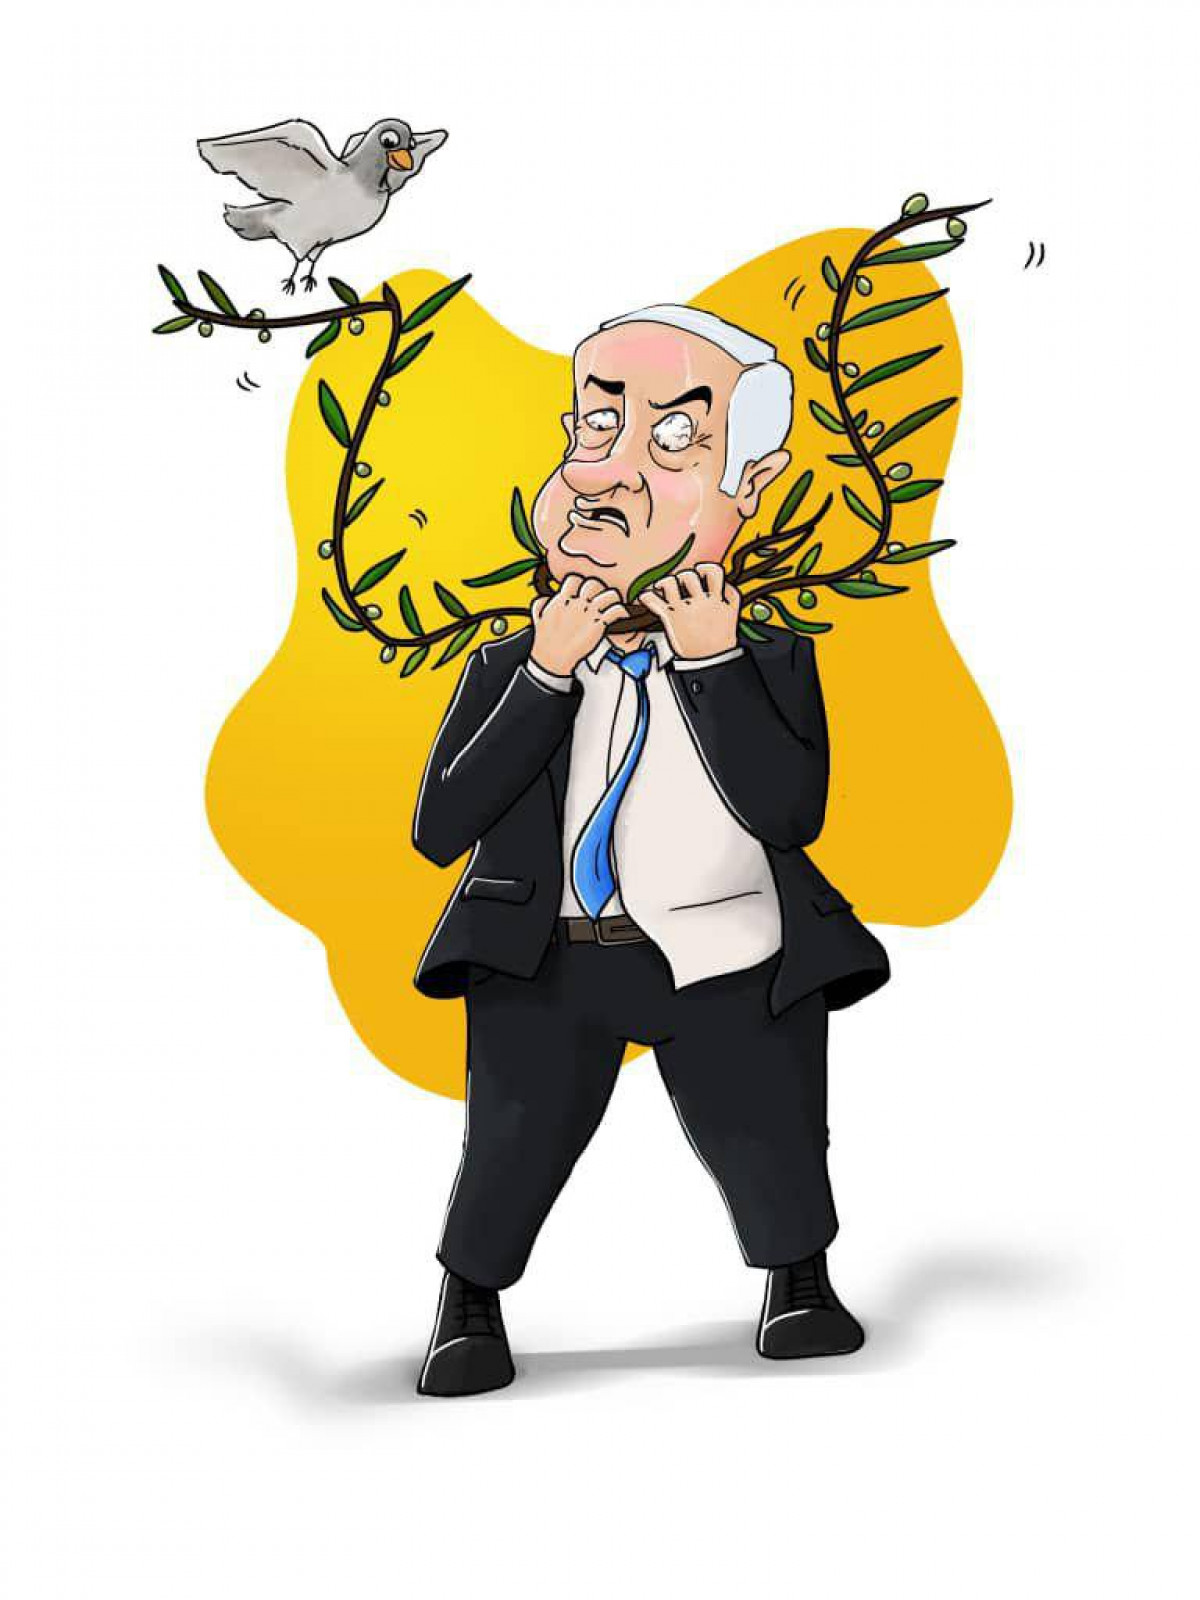 پایان حیات سیاسی بنیامین نتانیاهو